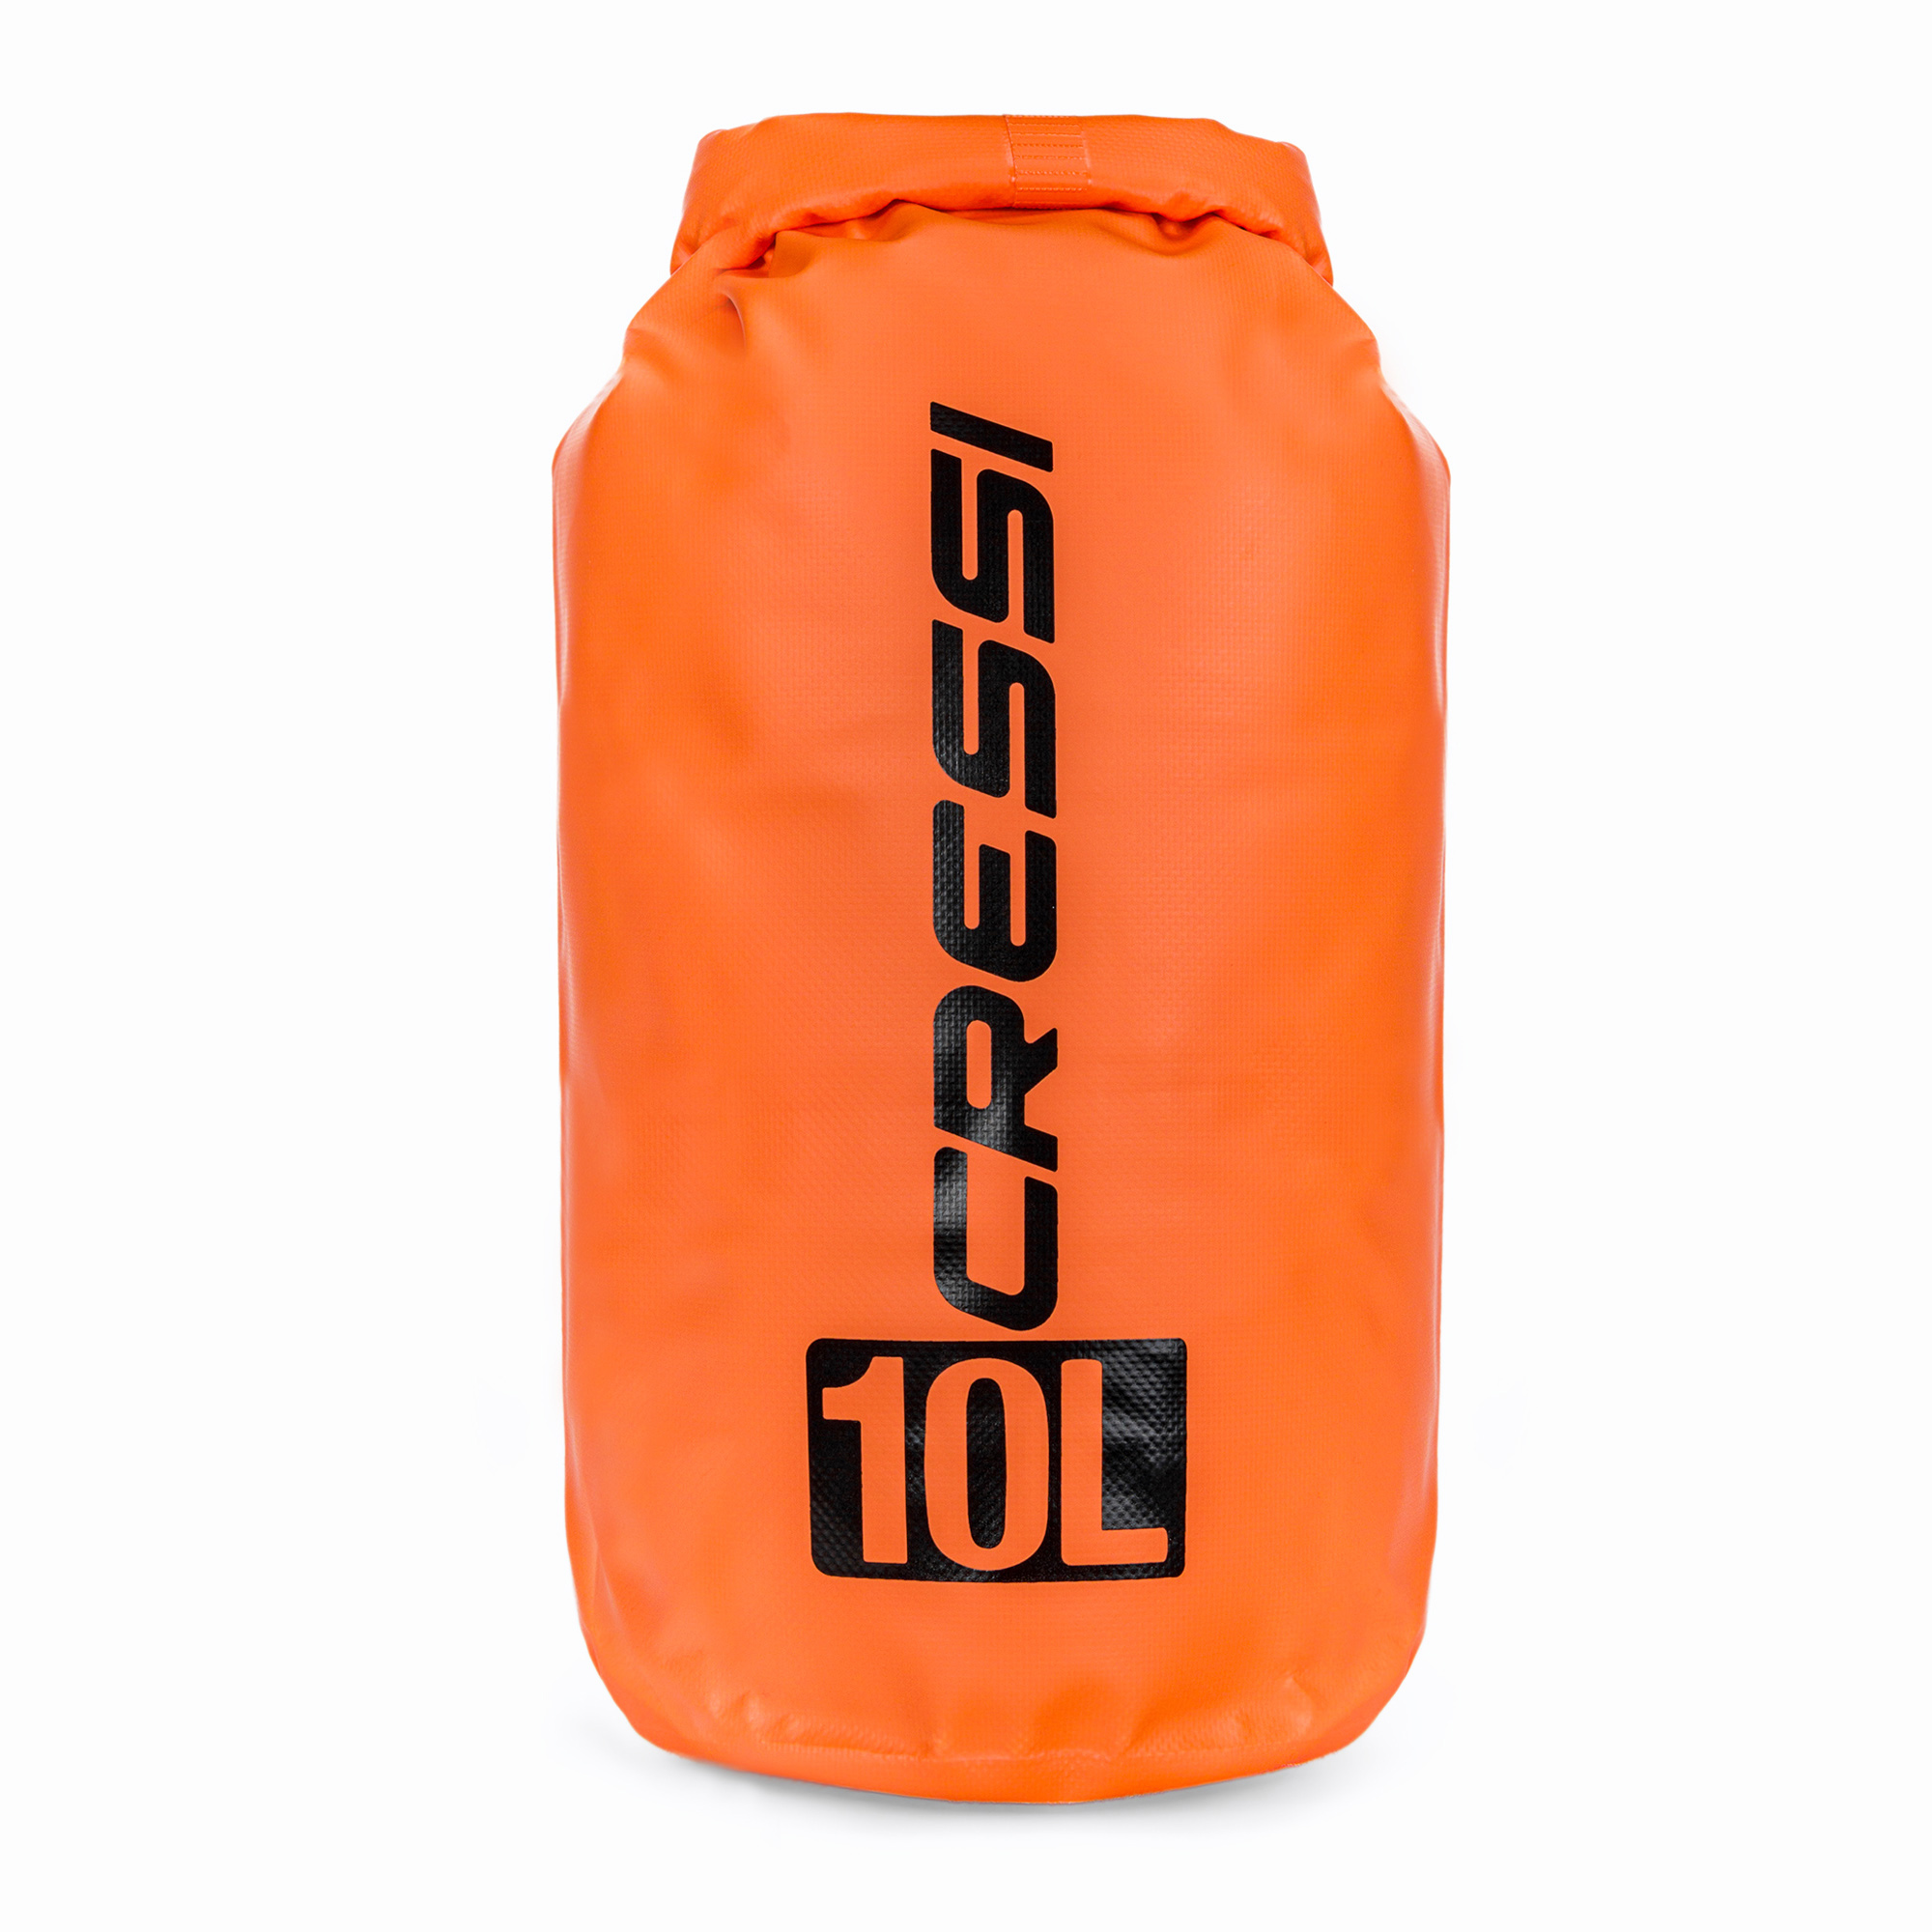 Cressi Dry Bag 10 l orange